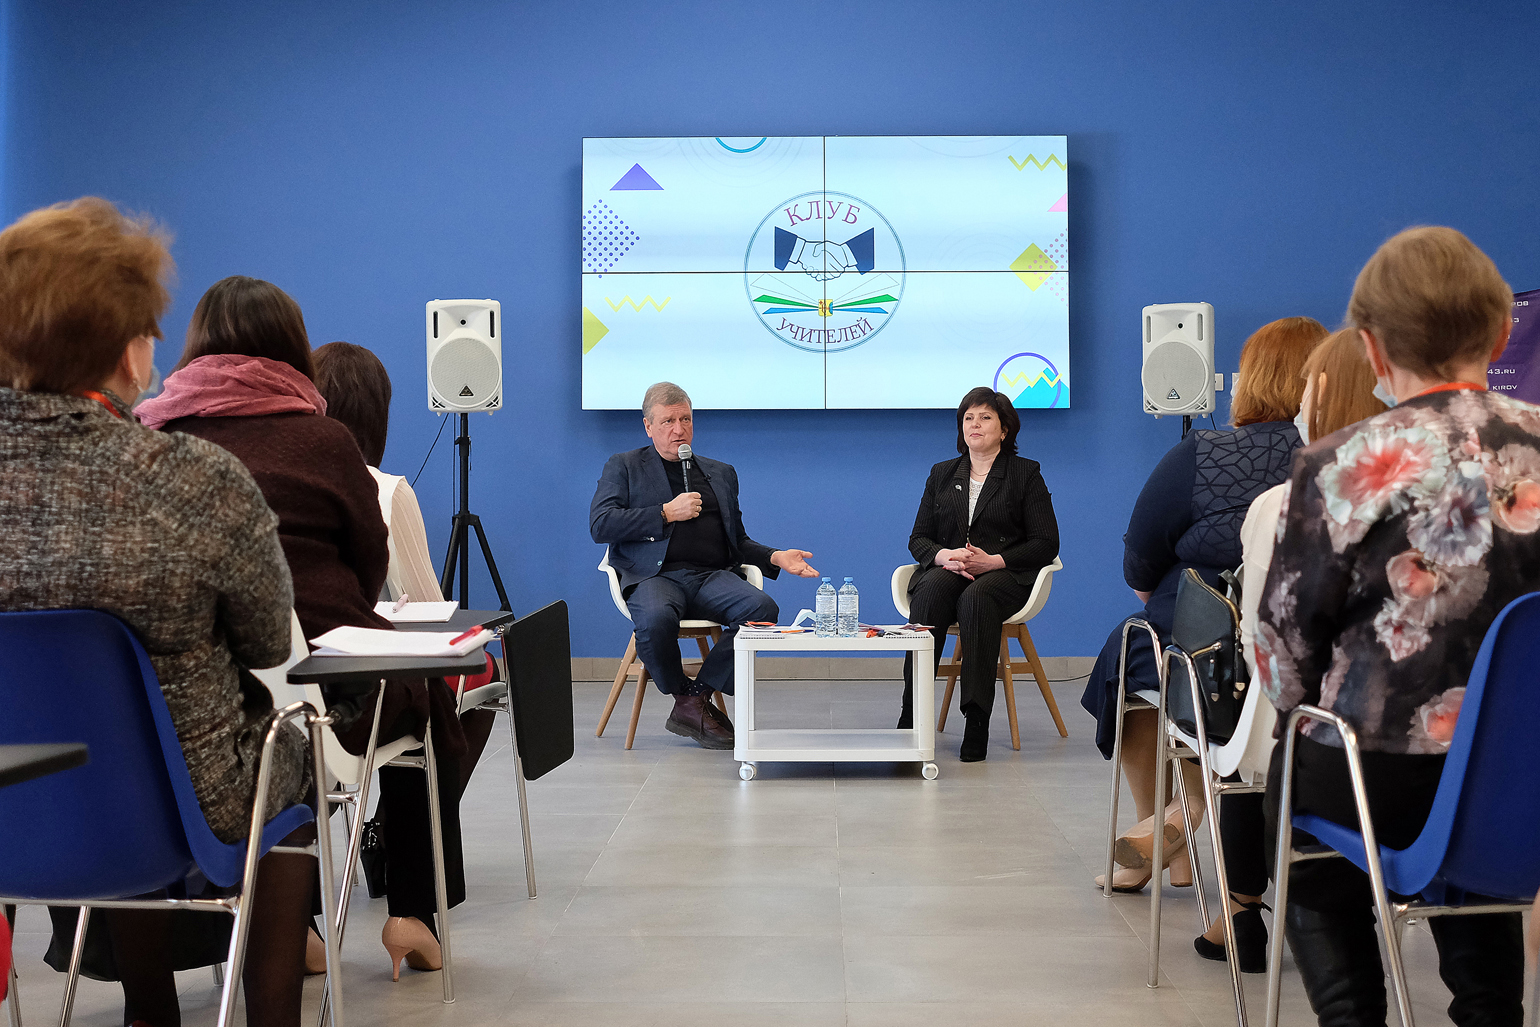 Вопросы наставничества в сфере образования обсудили на заседании Клуба учителей в Кирове